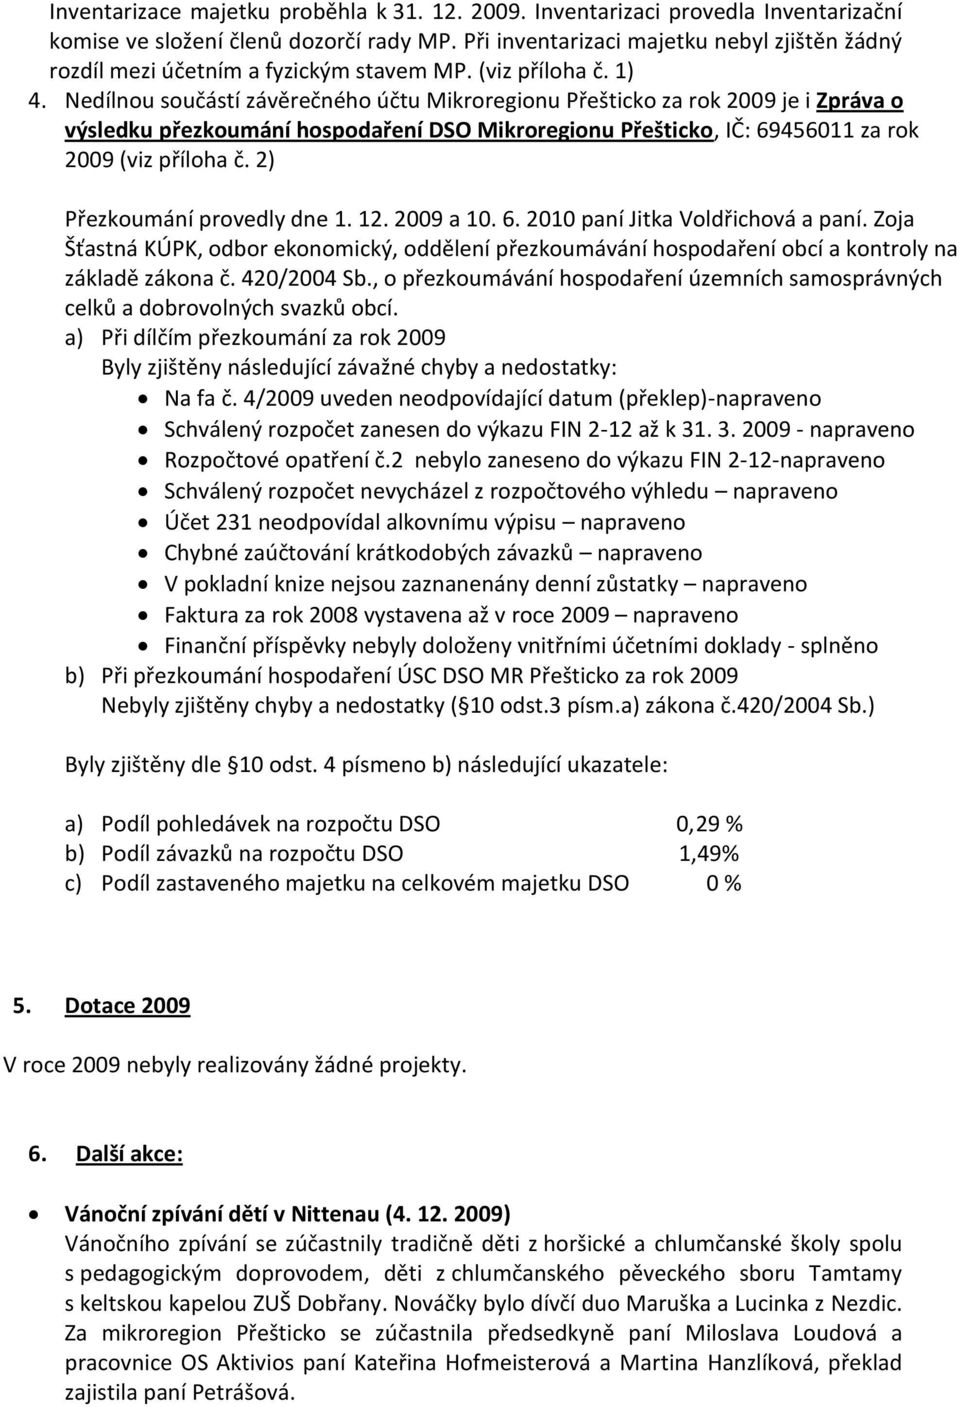 Nedílnou součástí závěrečného účtu Mikroregionu Přešticko za rok 2009 je i Zpráva o výsledku přezkoumání hospodaření DSO Mikroregionu Přešticko, IČ: 69456011 za rok 2009 (viz příloha č.